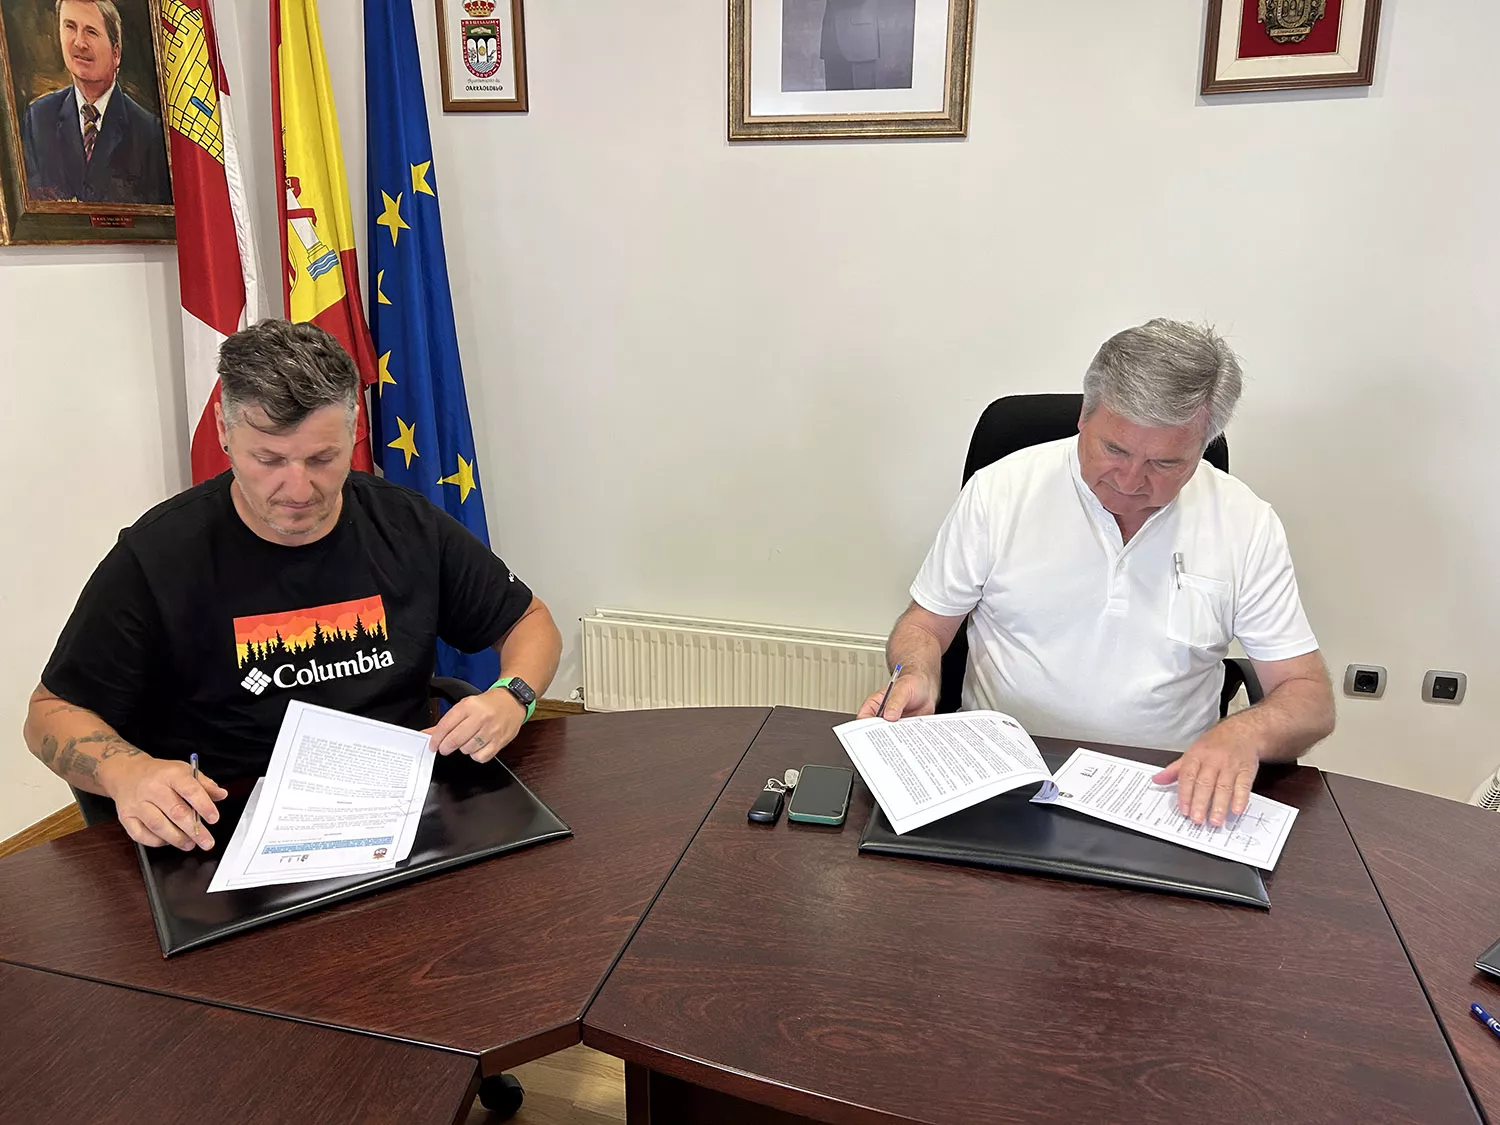 Firma convenio entre Carracedelo, Raúl Valcarce Diez y ABA, Daniel Franco Morán.